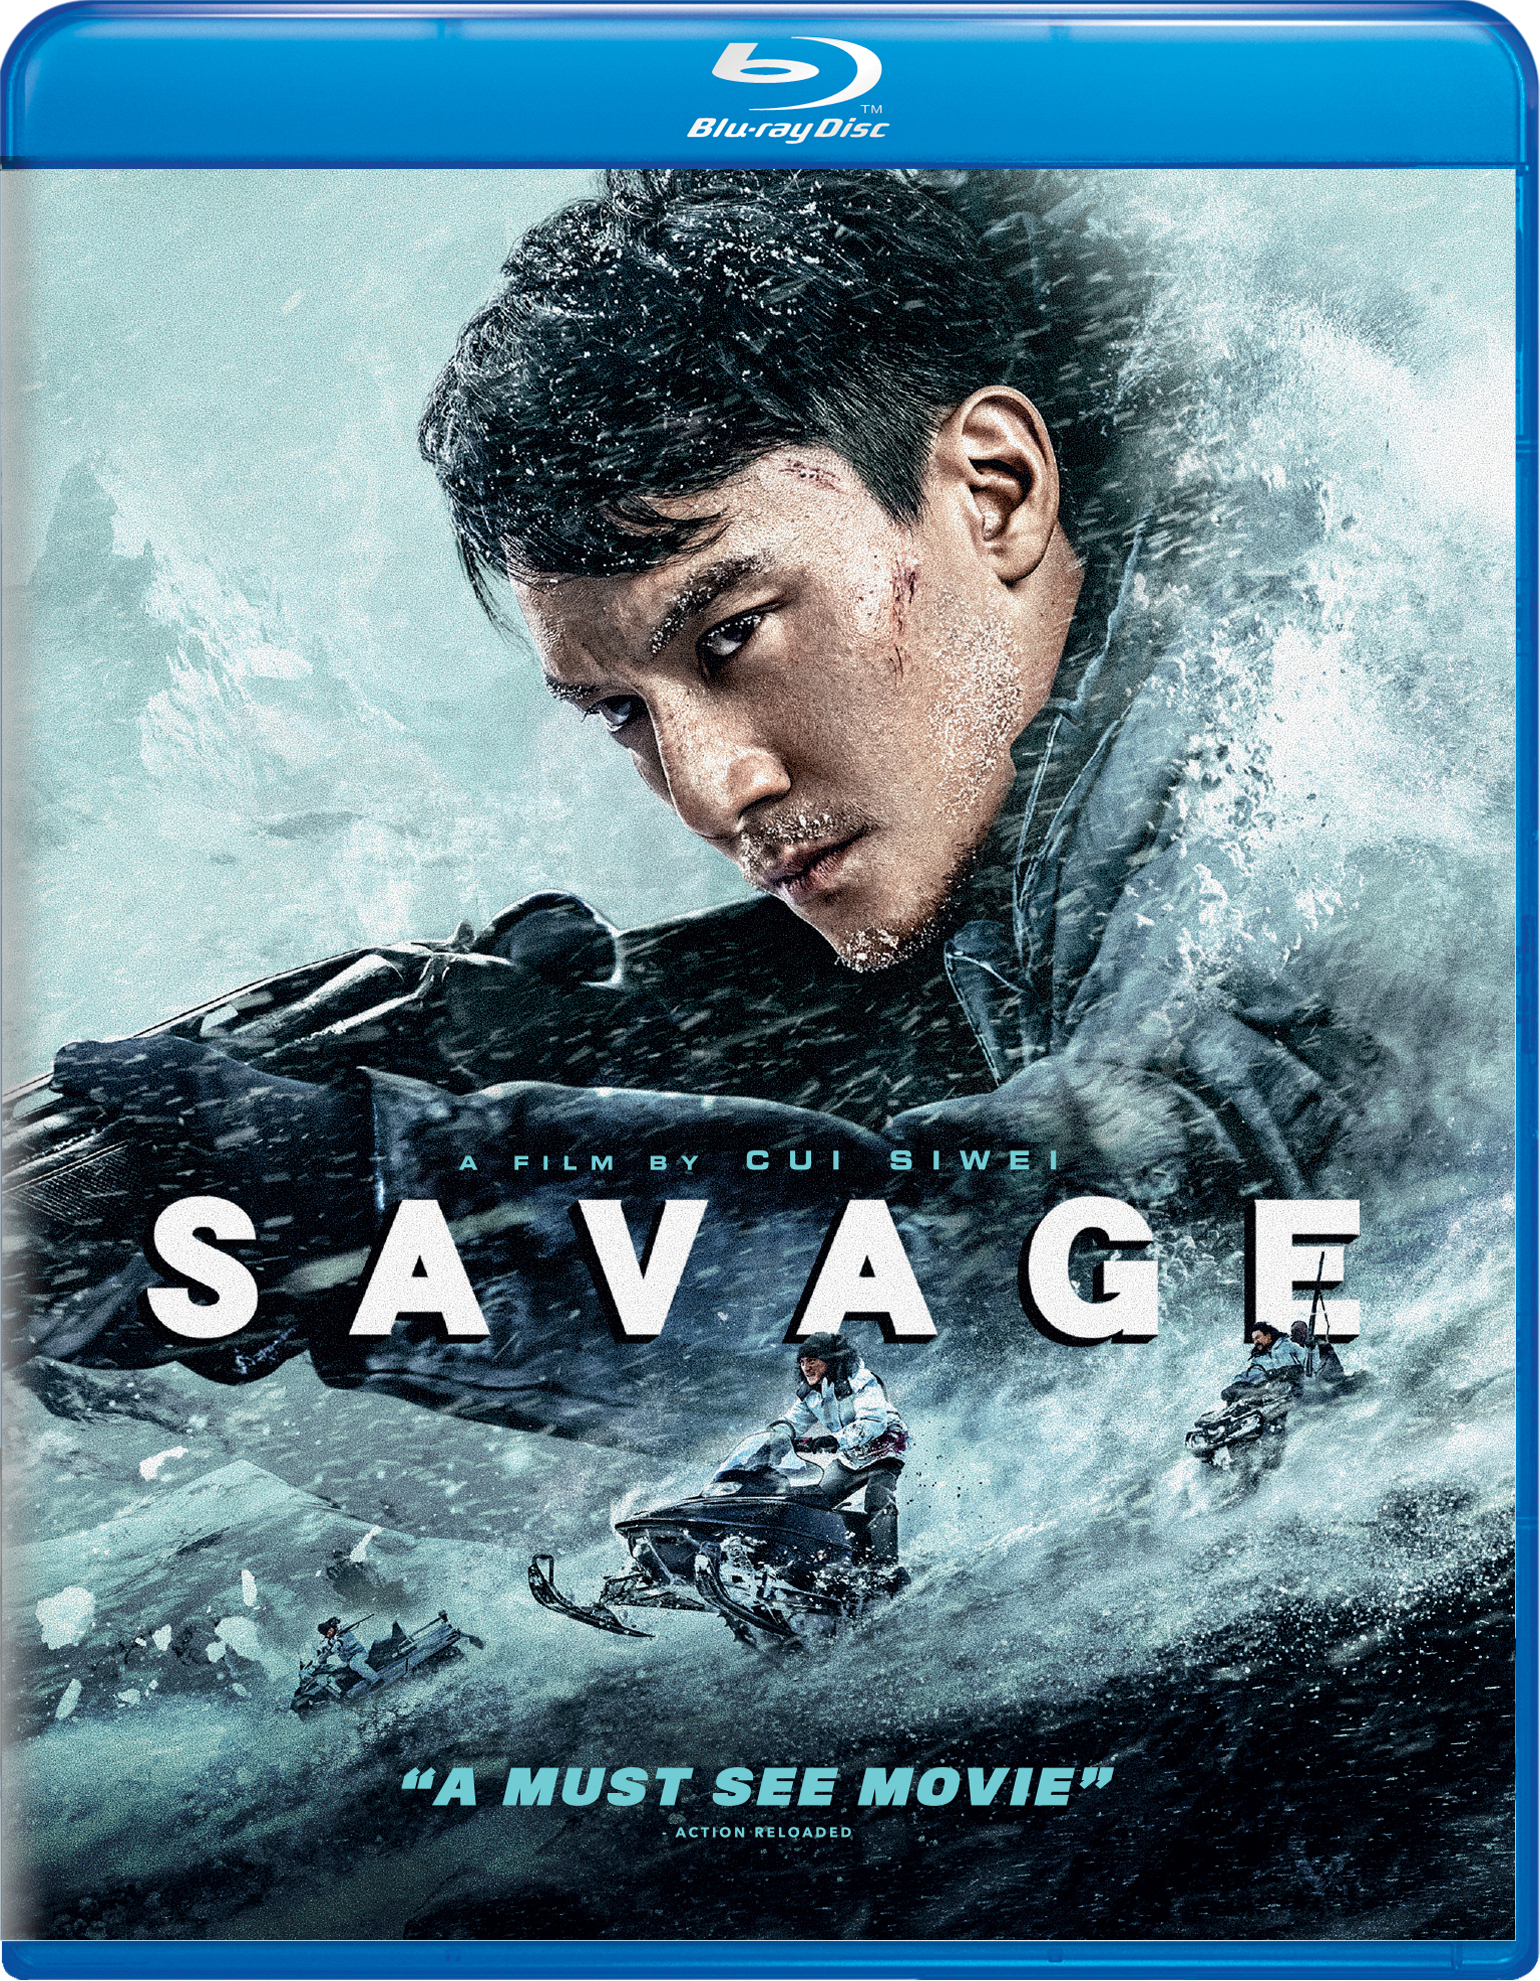 Savage - Blu-ray [ 2019 ]  - Foreign Movies On Blu-ray - Movies On GRUV